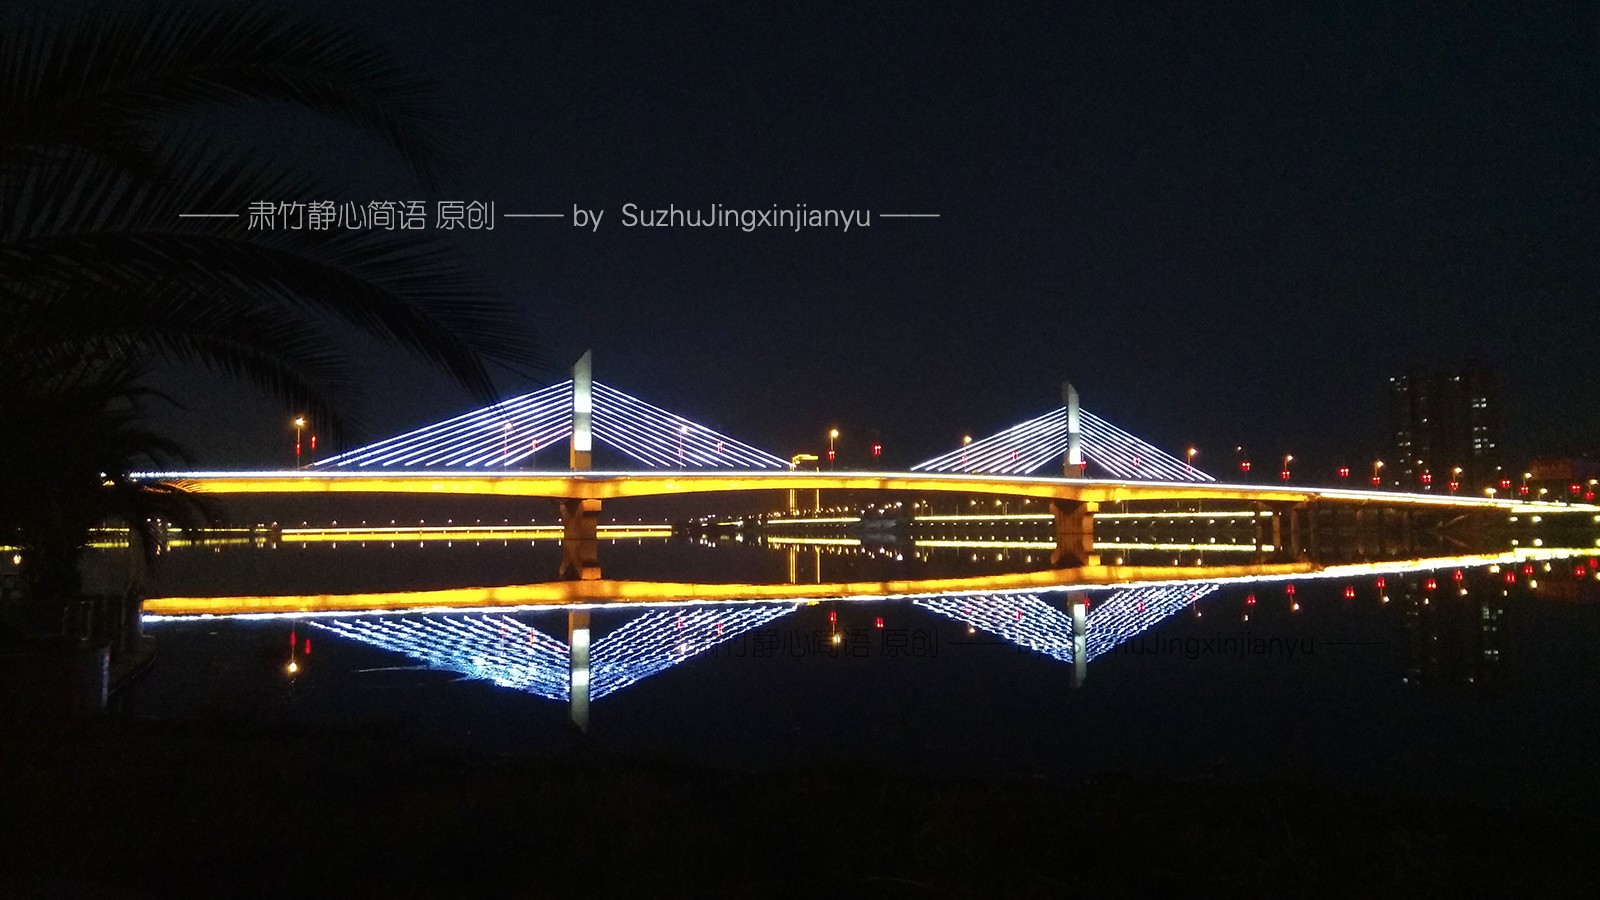 定军山大桥的霓虹灯是这个县城最具标志性的夜景之一,在它的周围也